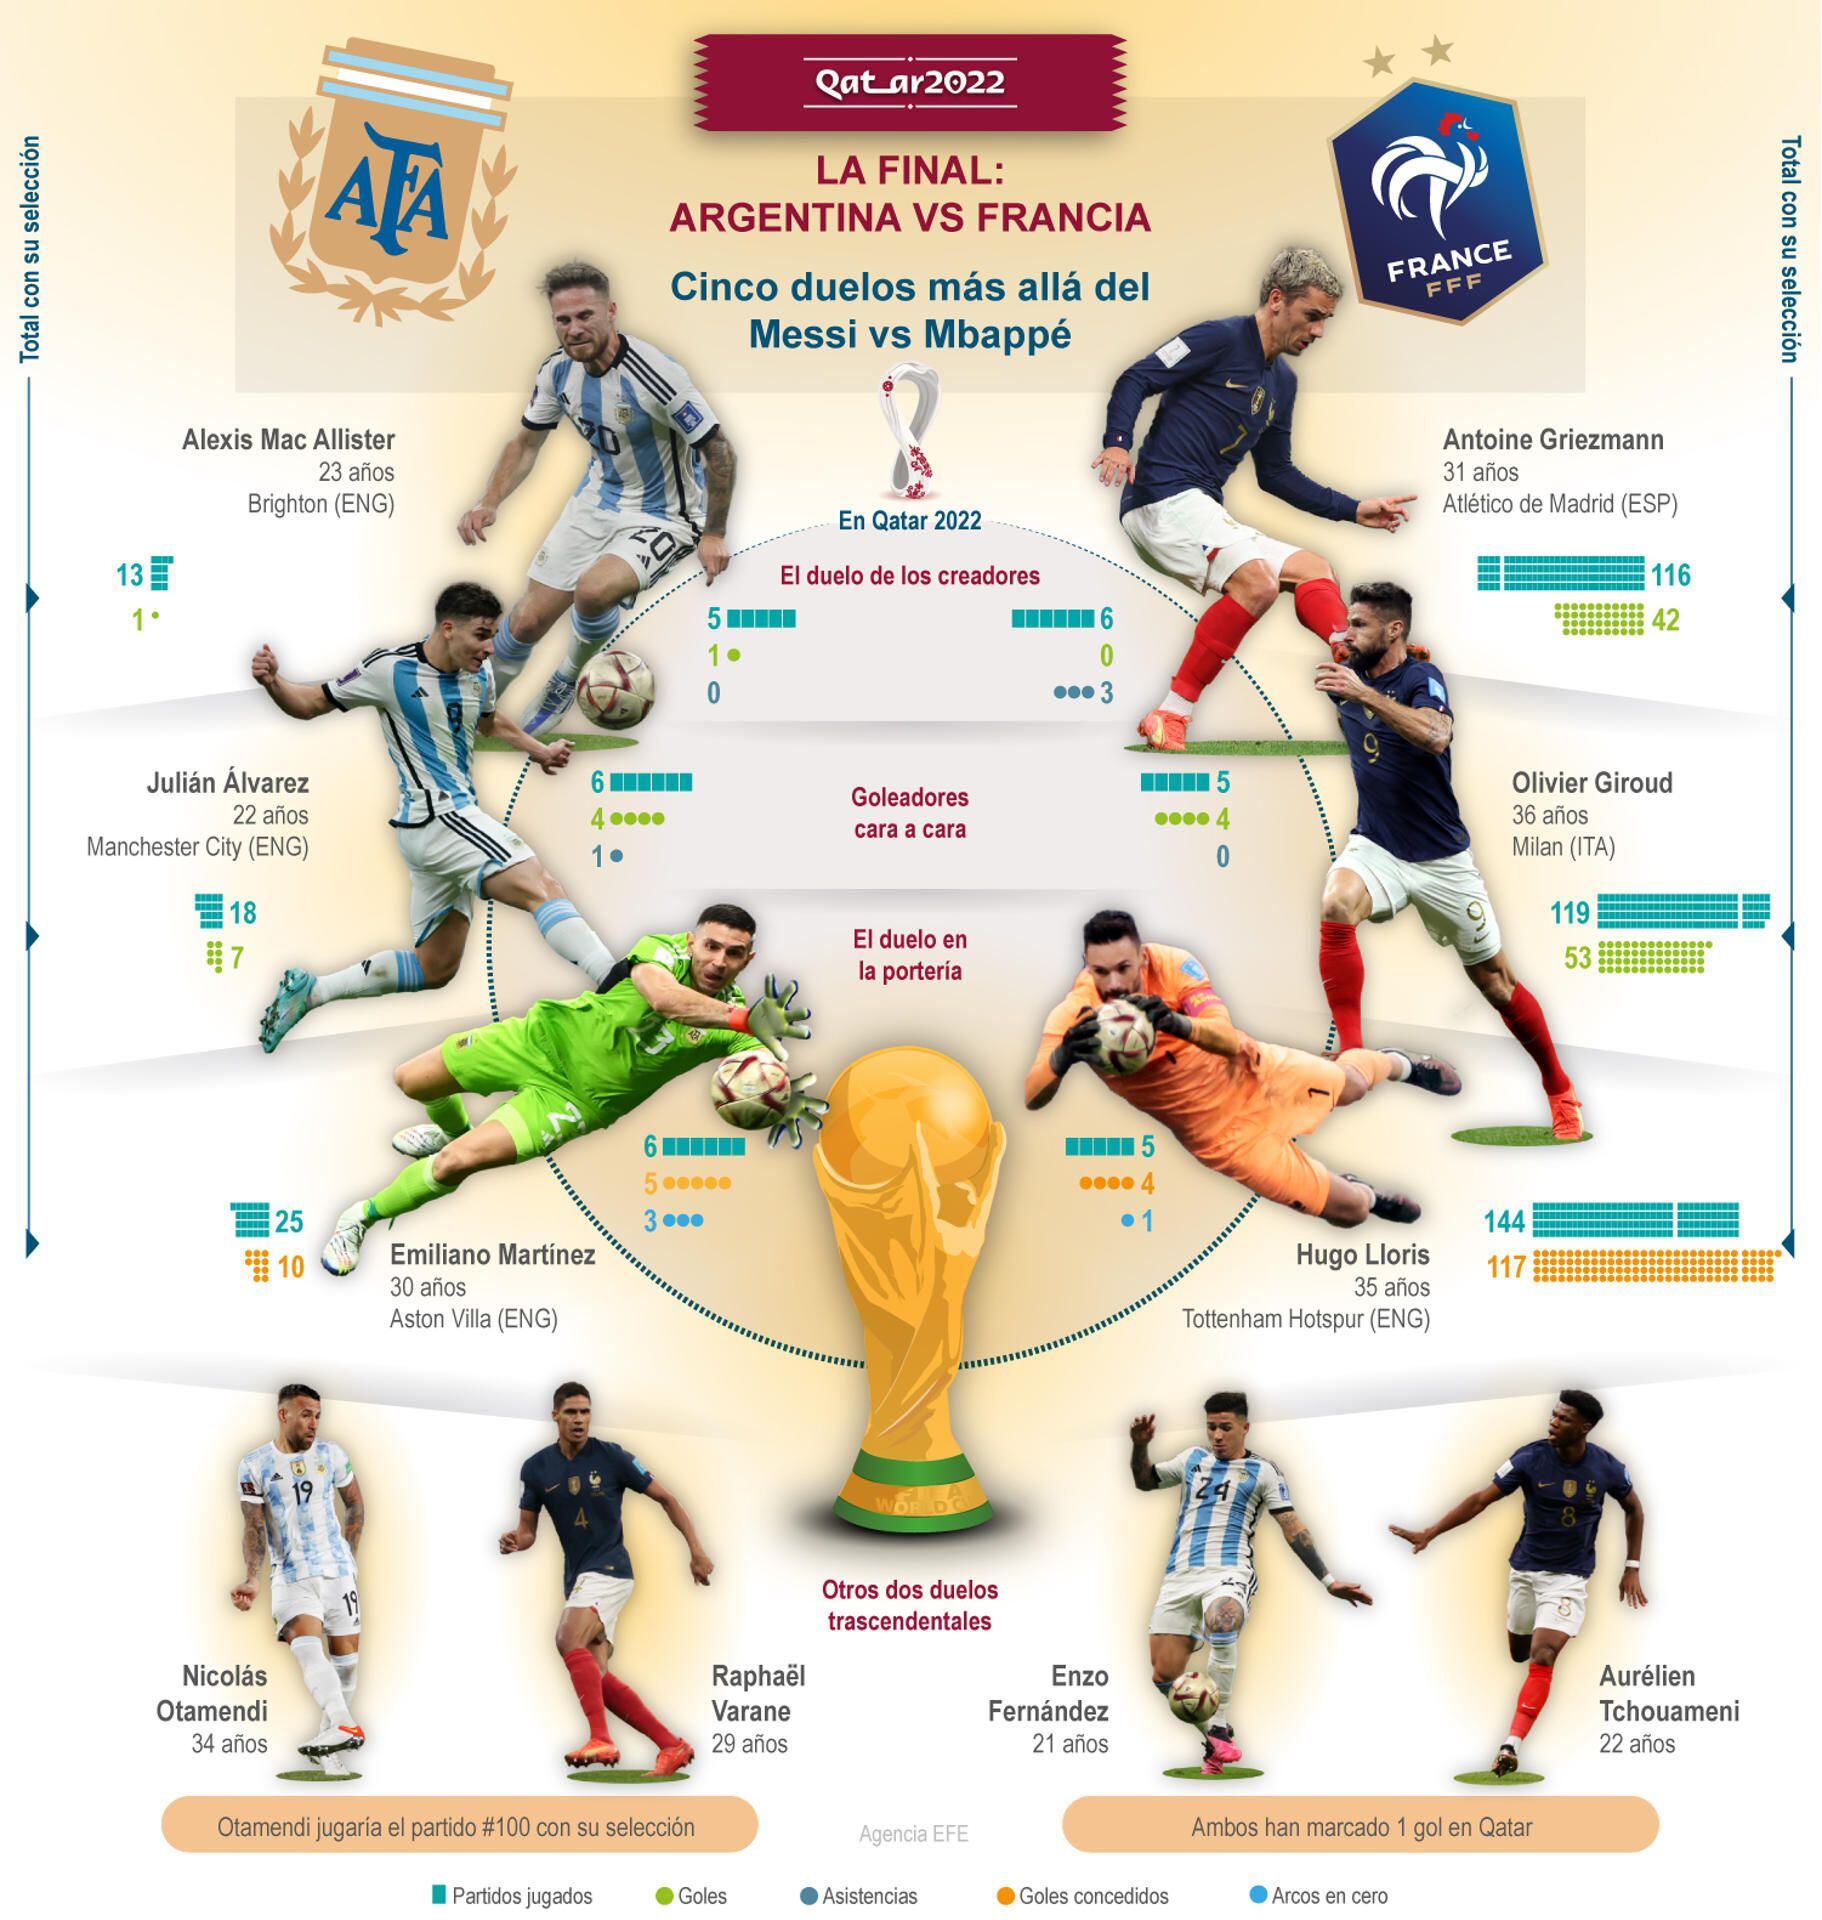 Argentina y Francia se juegan la Copa de la FIFA en el estadio de Lusail. (Infografía: EFE)